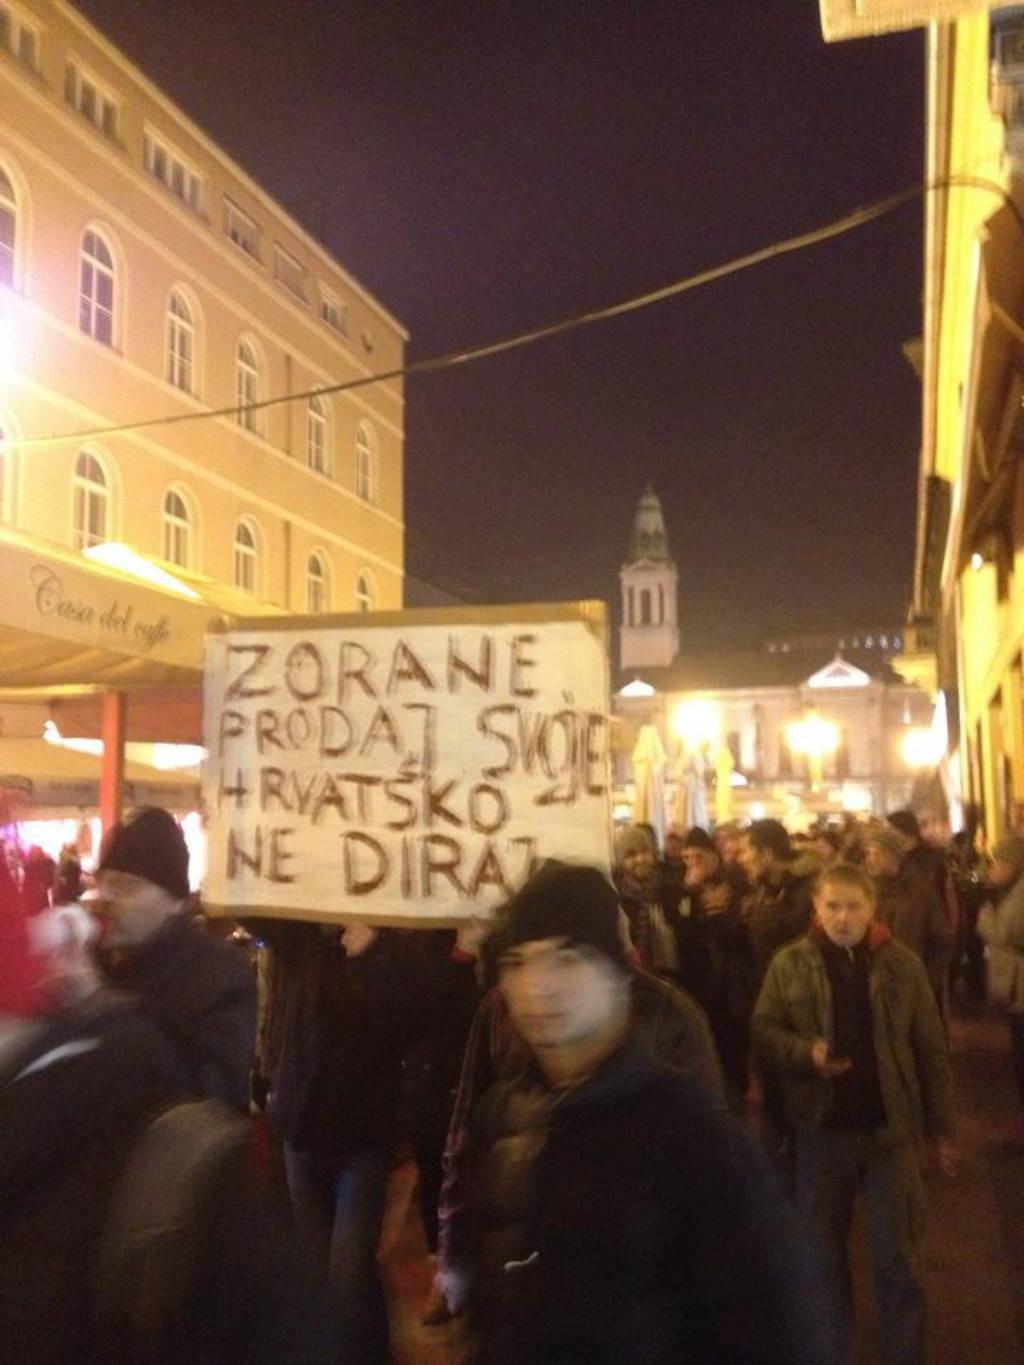 Facebook/Occupy Croatia